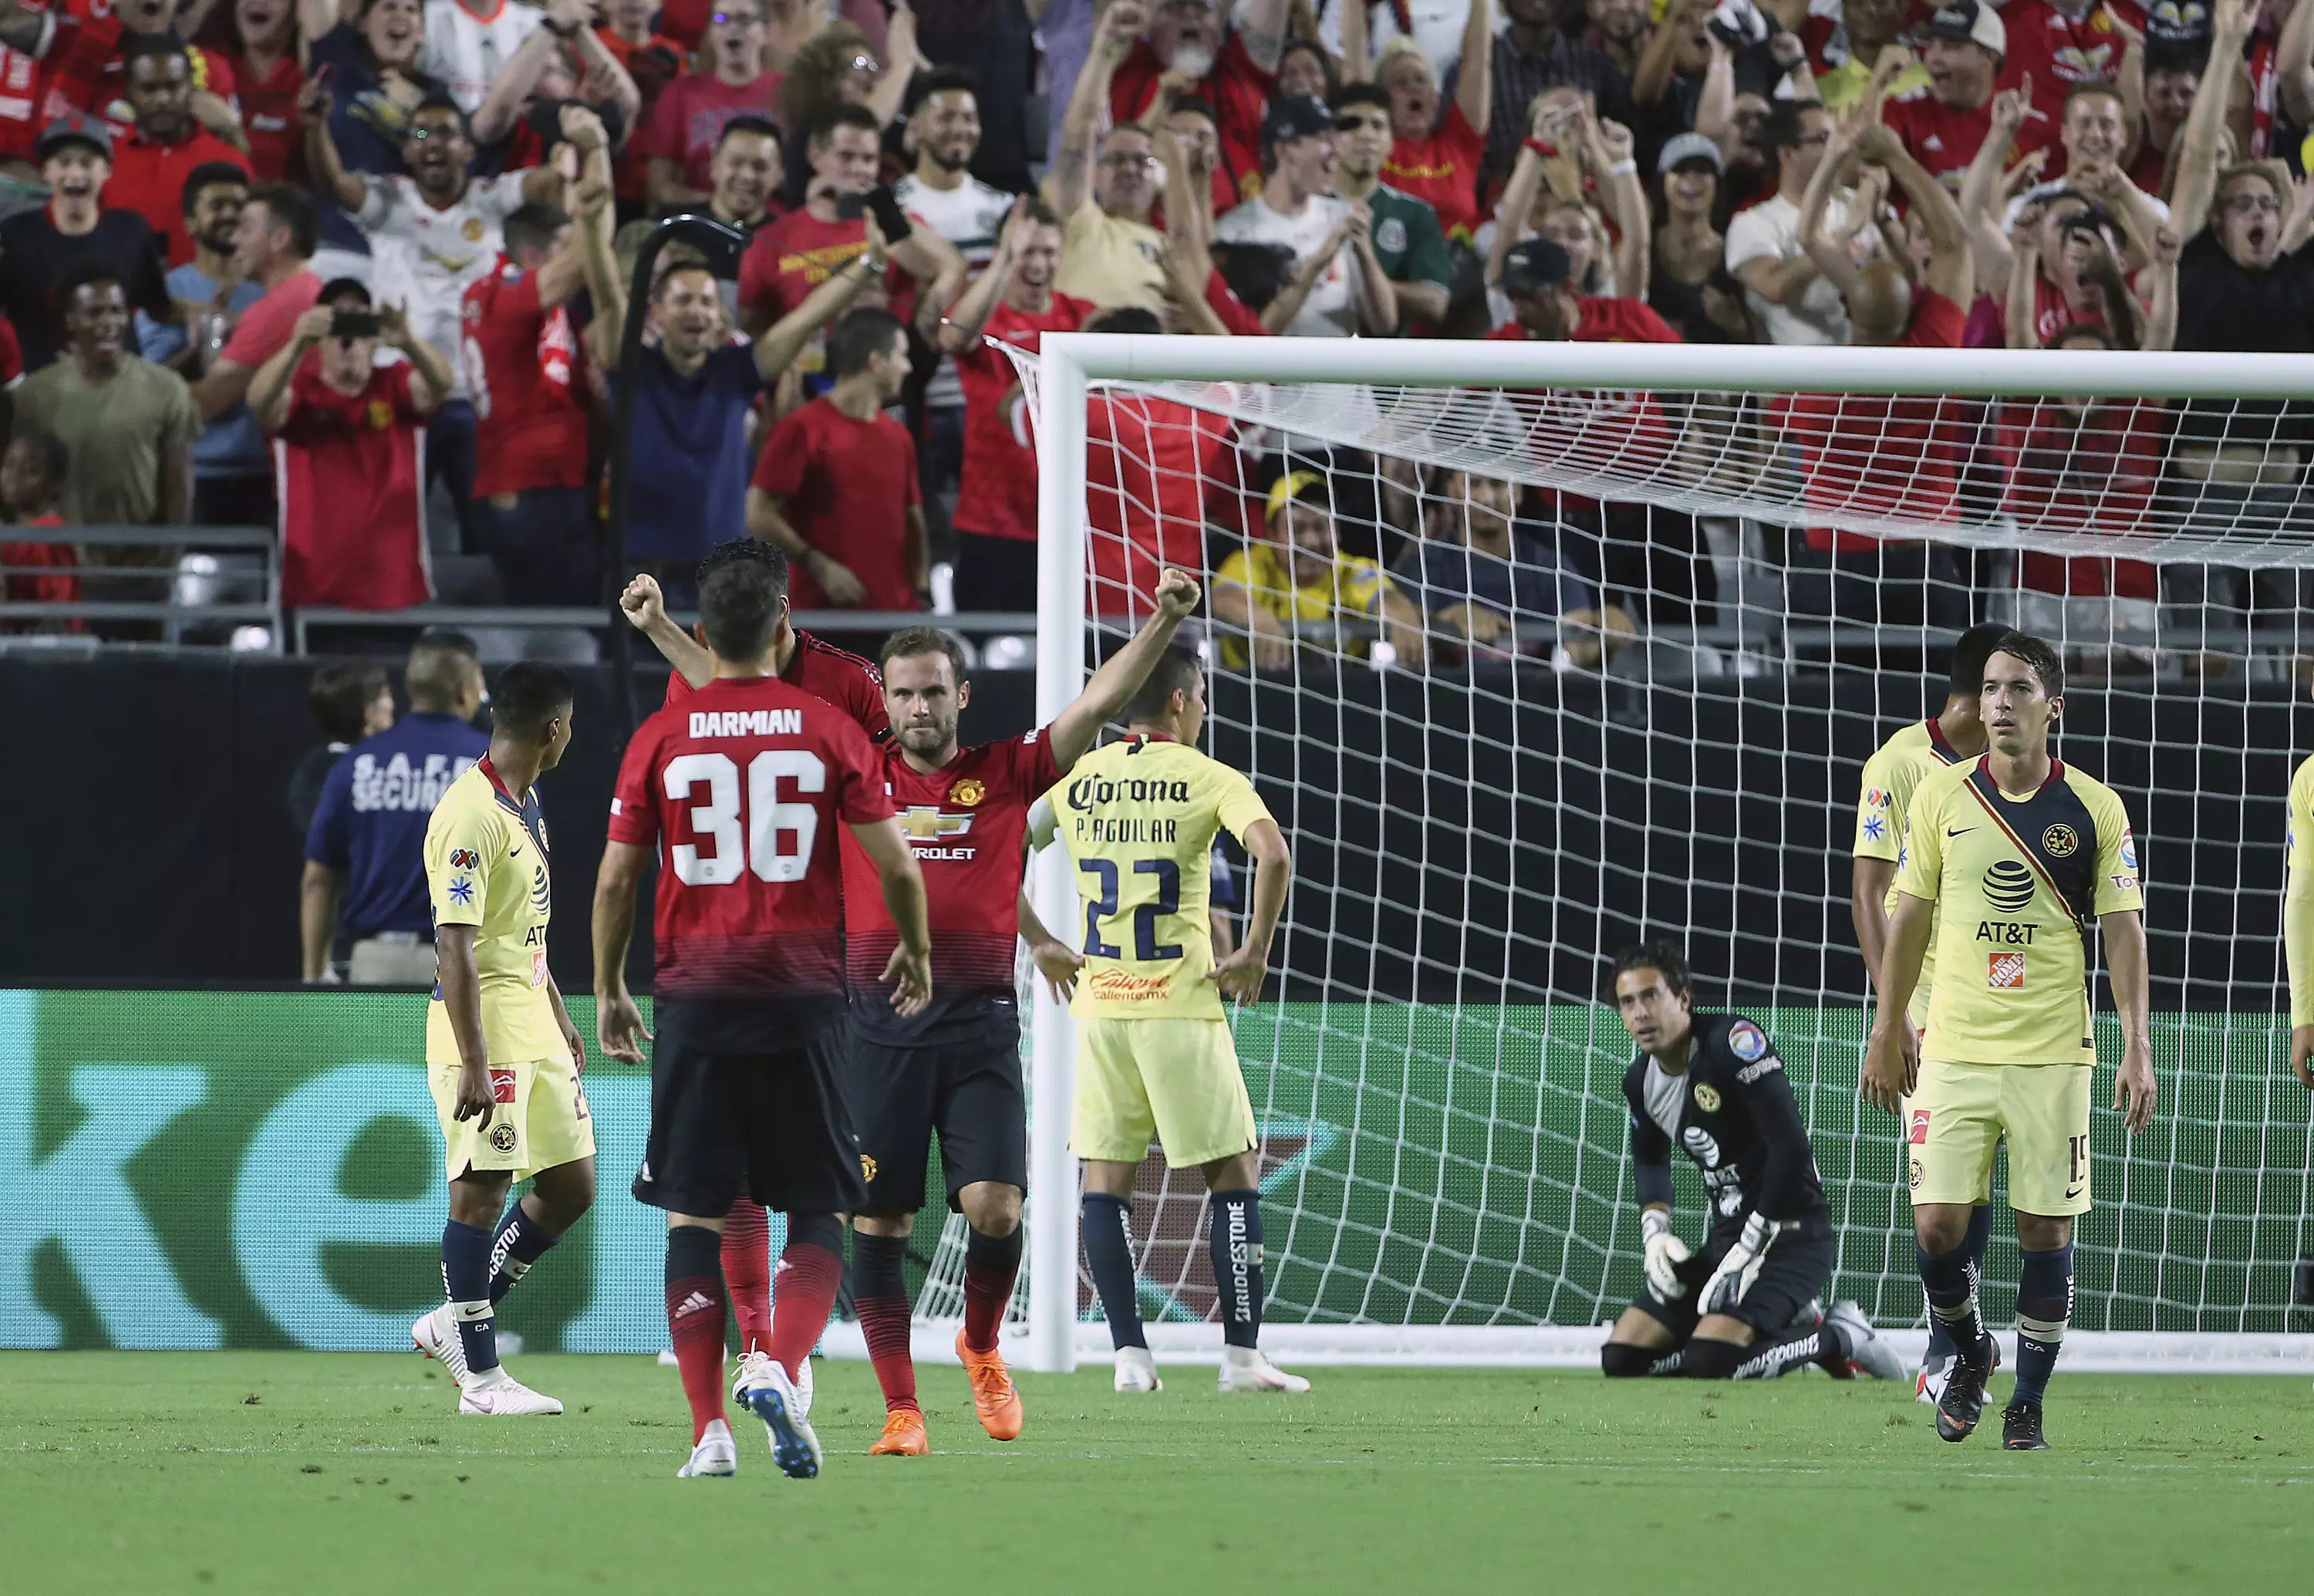 Mata celebrates scoring United's late equaliser. Image: PA Images